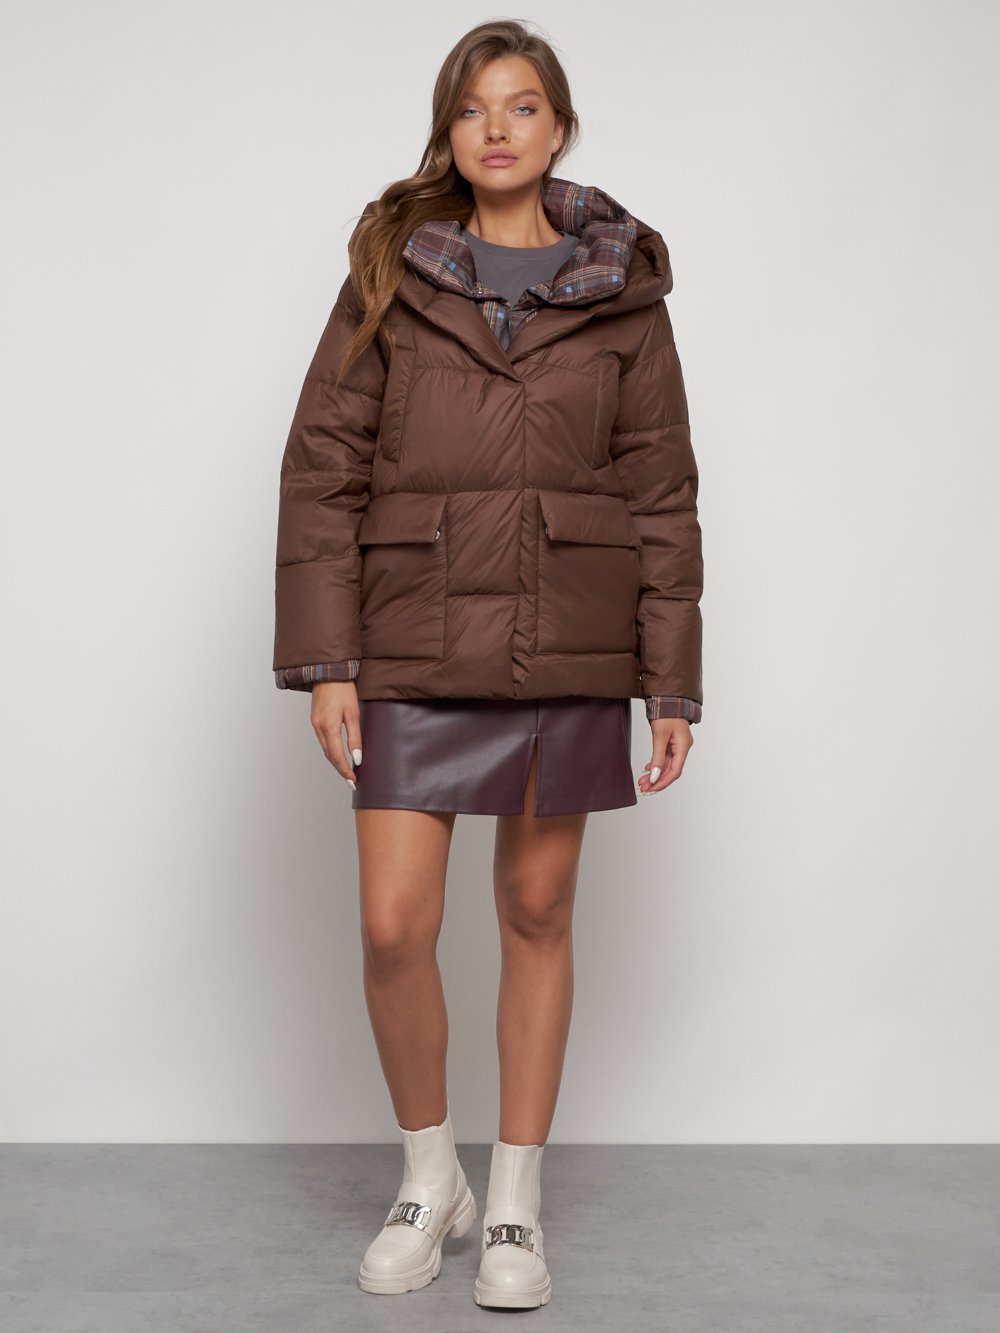 Купить оптом Зимняя женская куртка модная с капюшоном коричневого цвета 133105K в Екатеринбурге